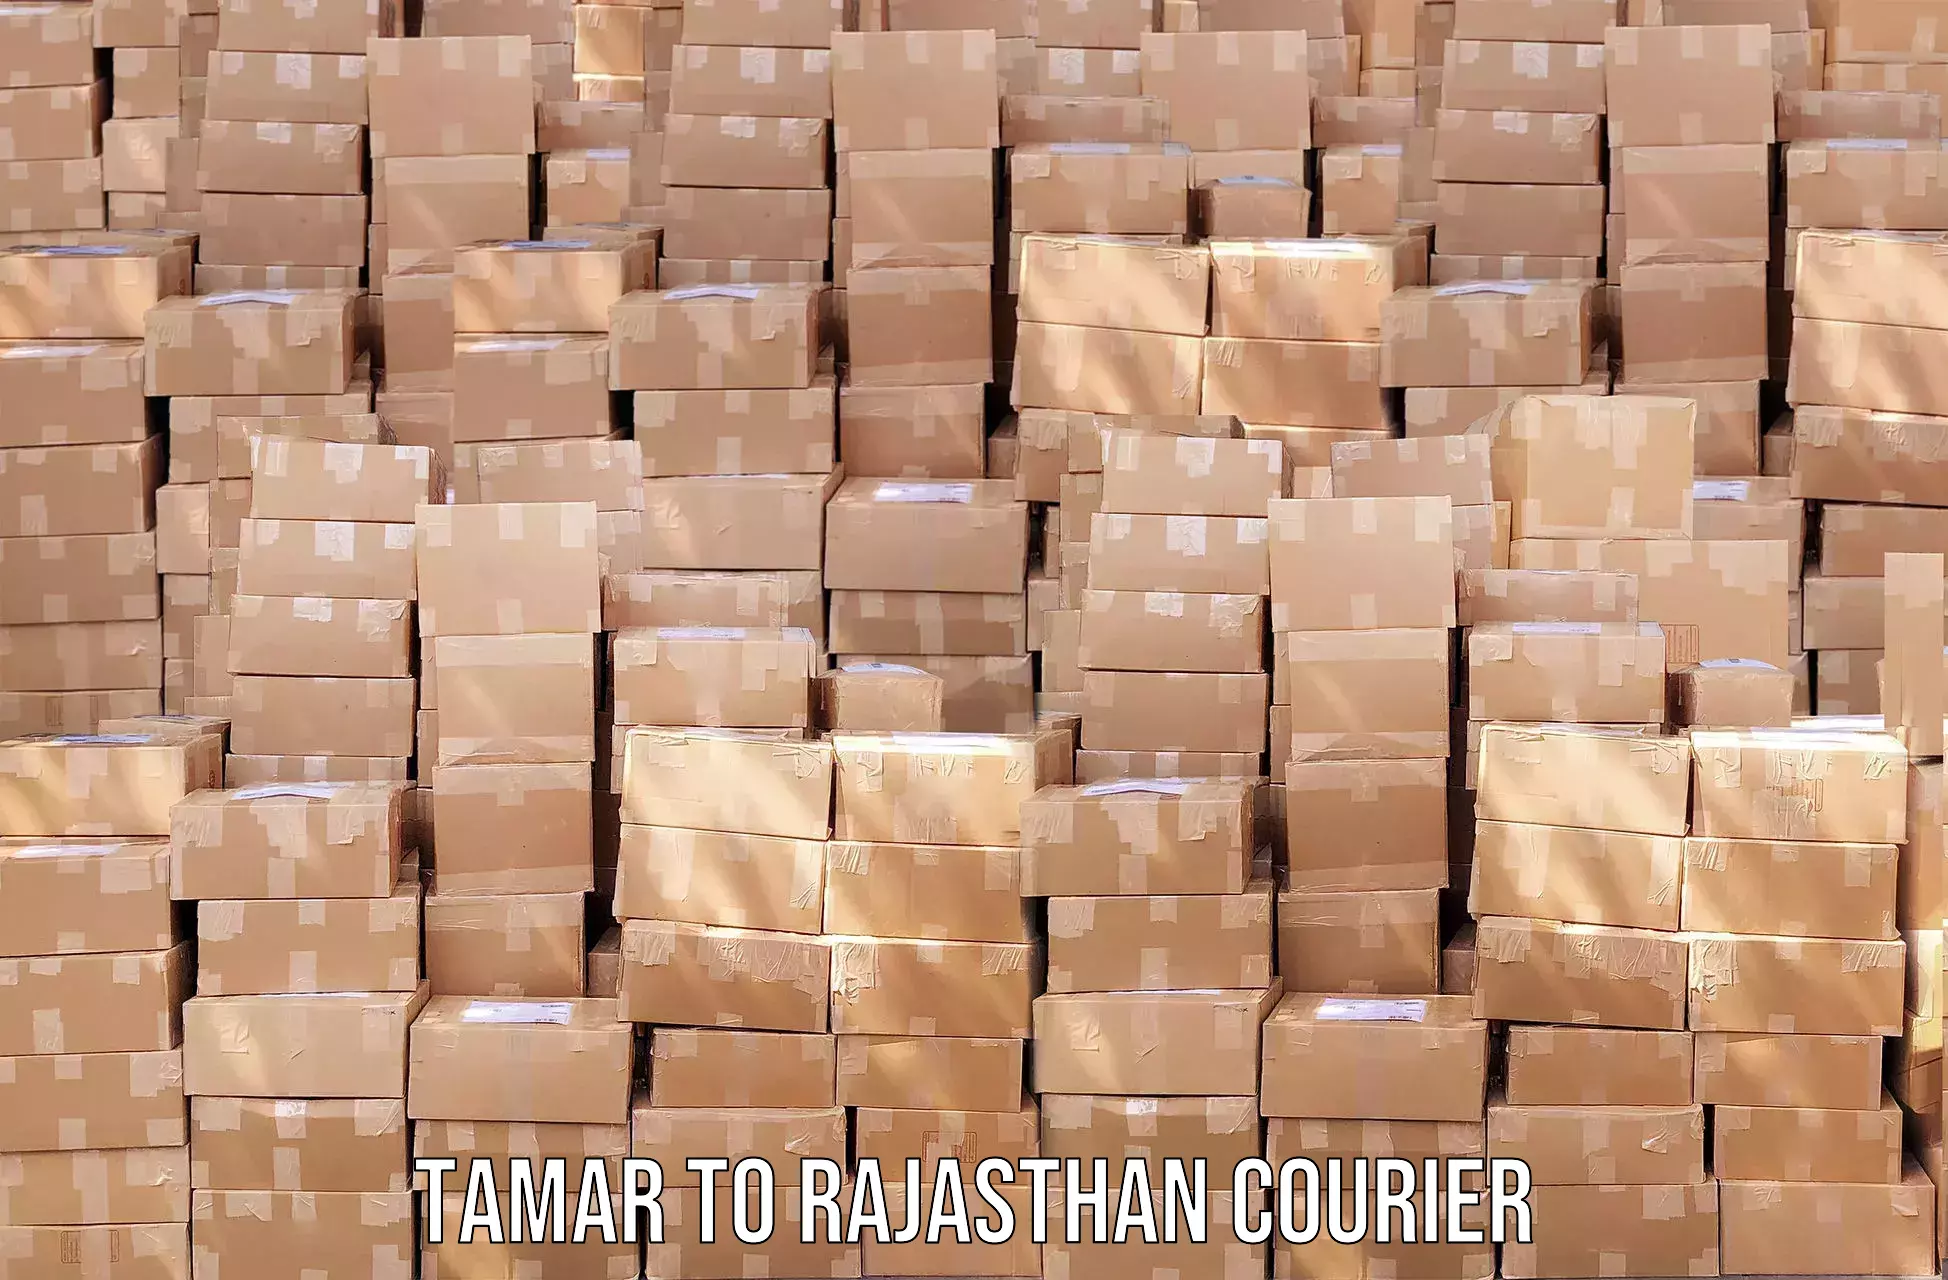 Courier service comparison Tamar to Pokhran